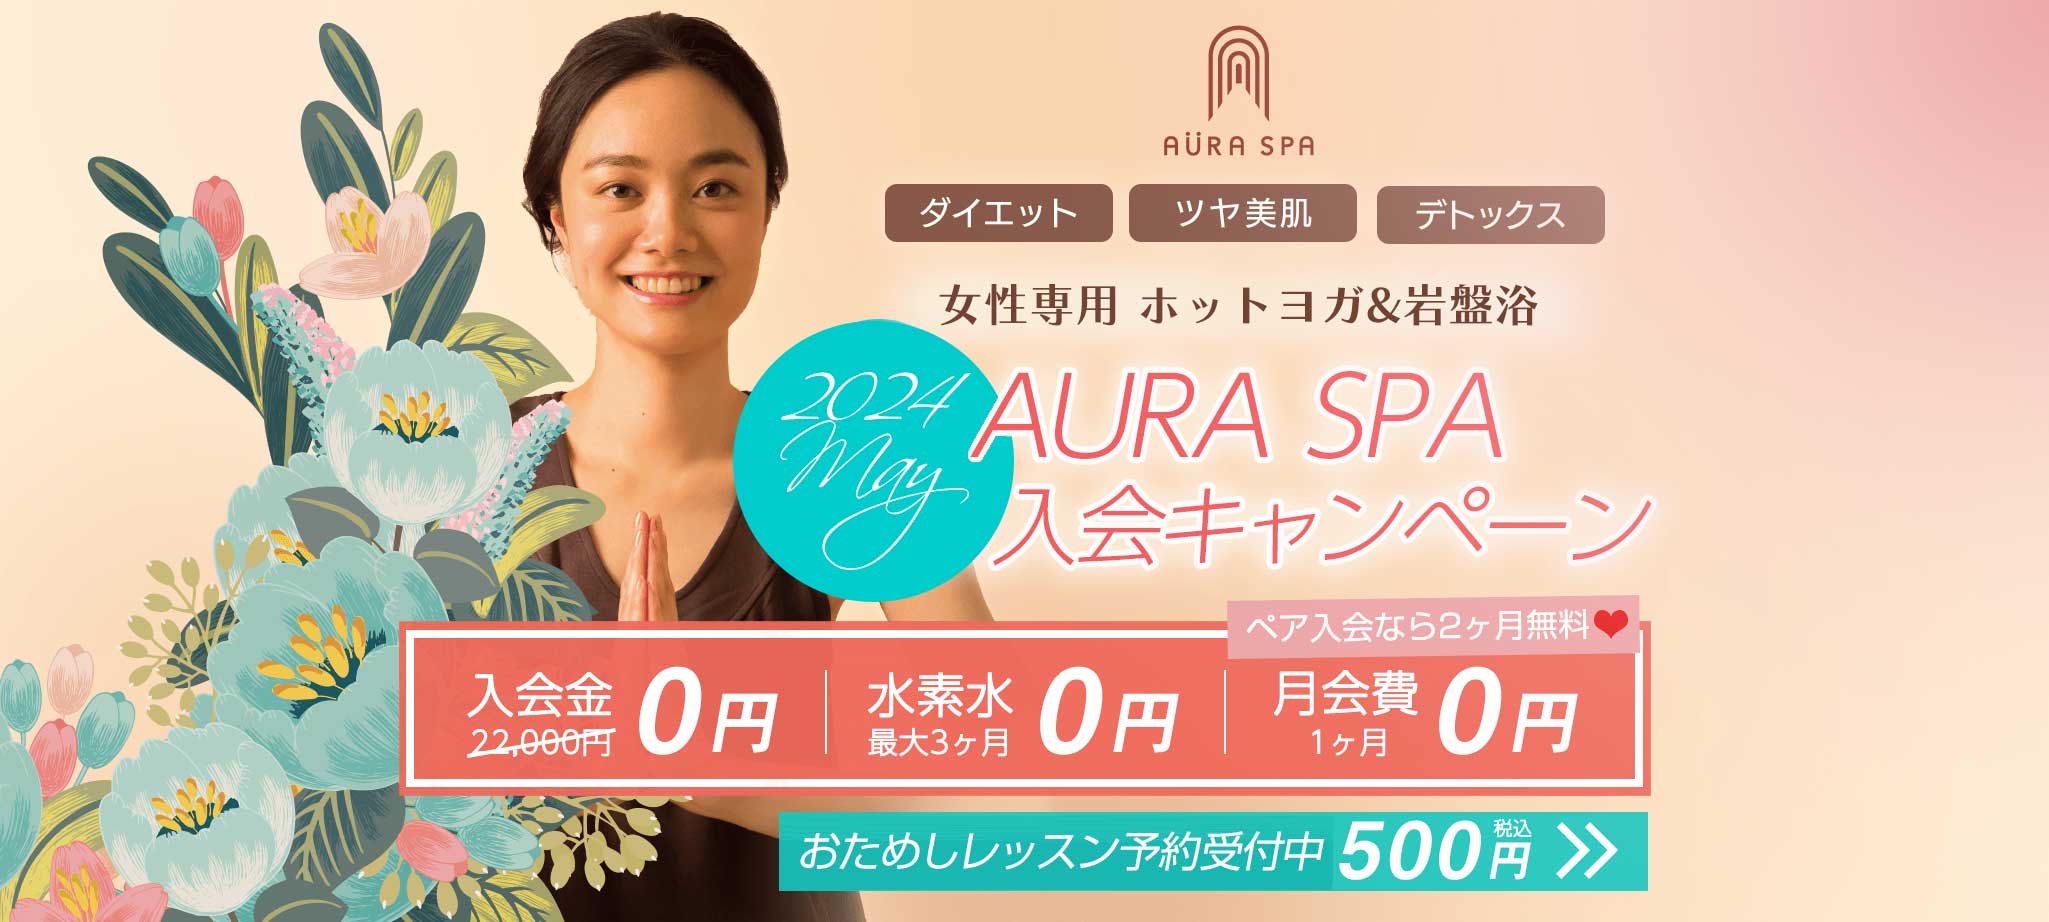 溶岩ホットヨガ&岩盤浴 AURA SPA(オーラスパ)入会体験キャンペーン